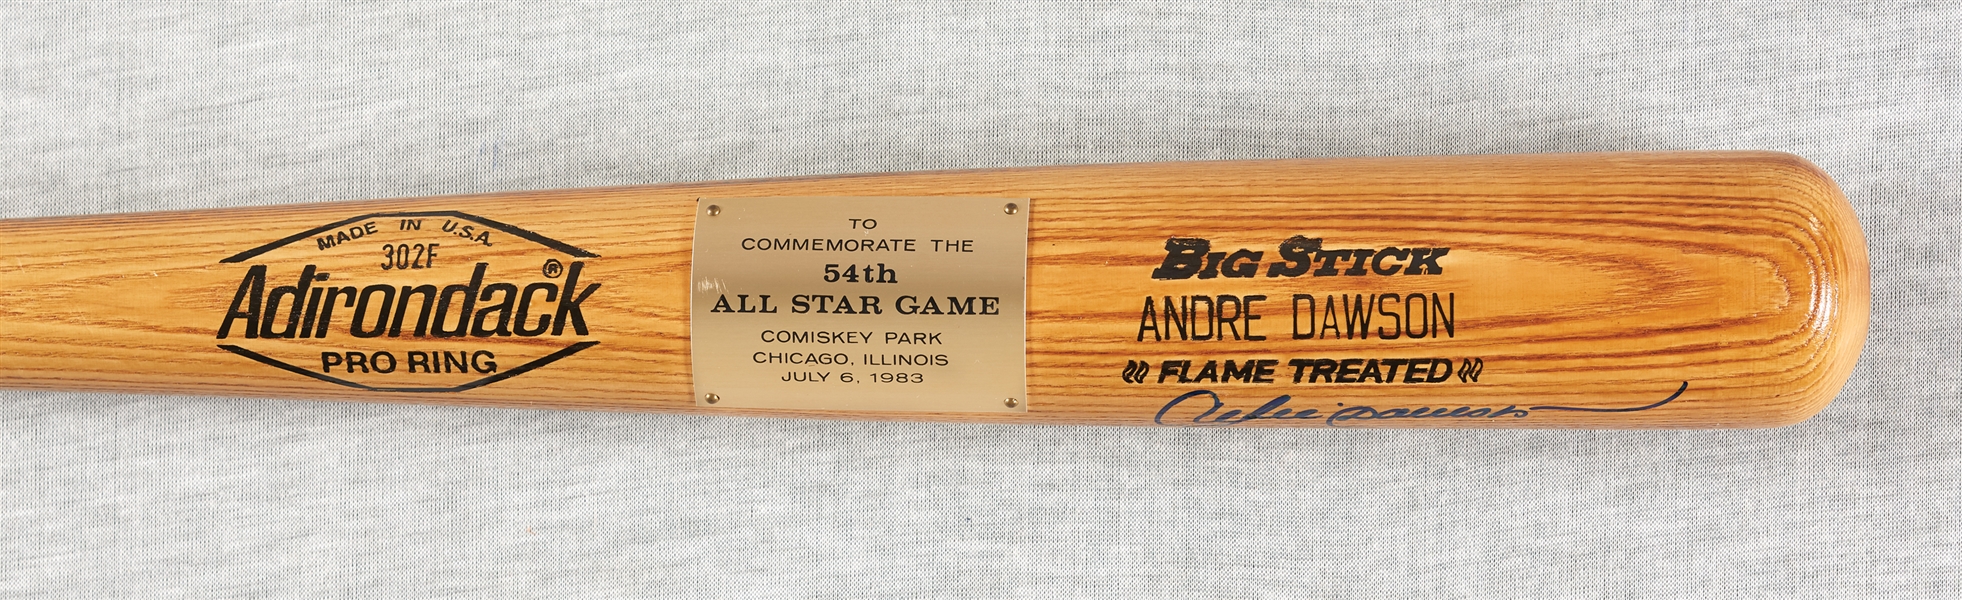 Andre Dawson Signed 1983 All-Star Game Commemorative Adirondack Bat (Fanatics/Dawson LOA)